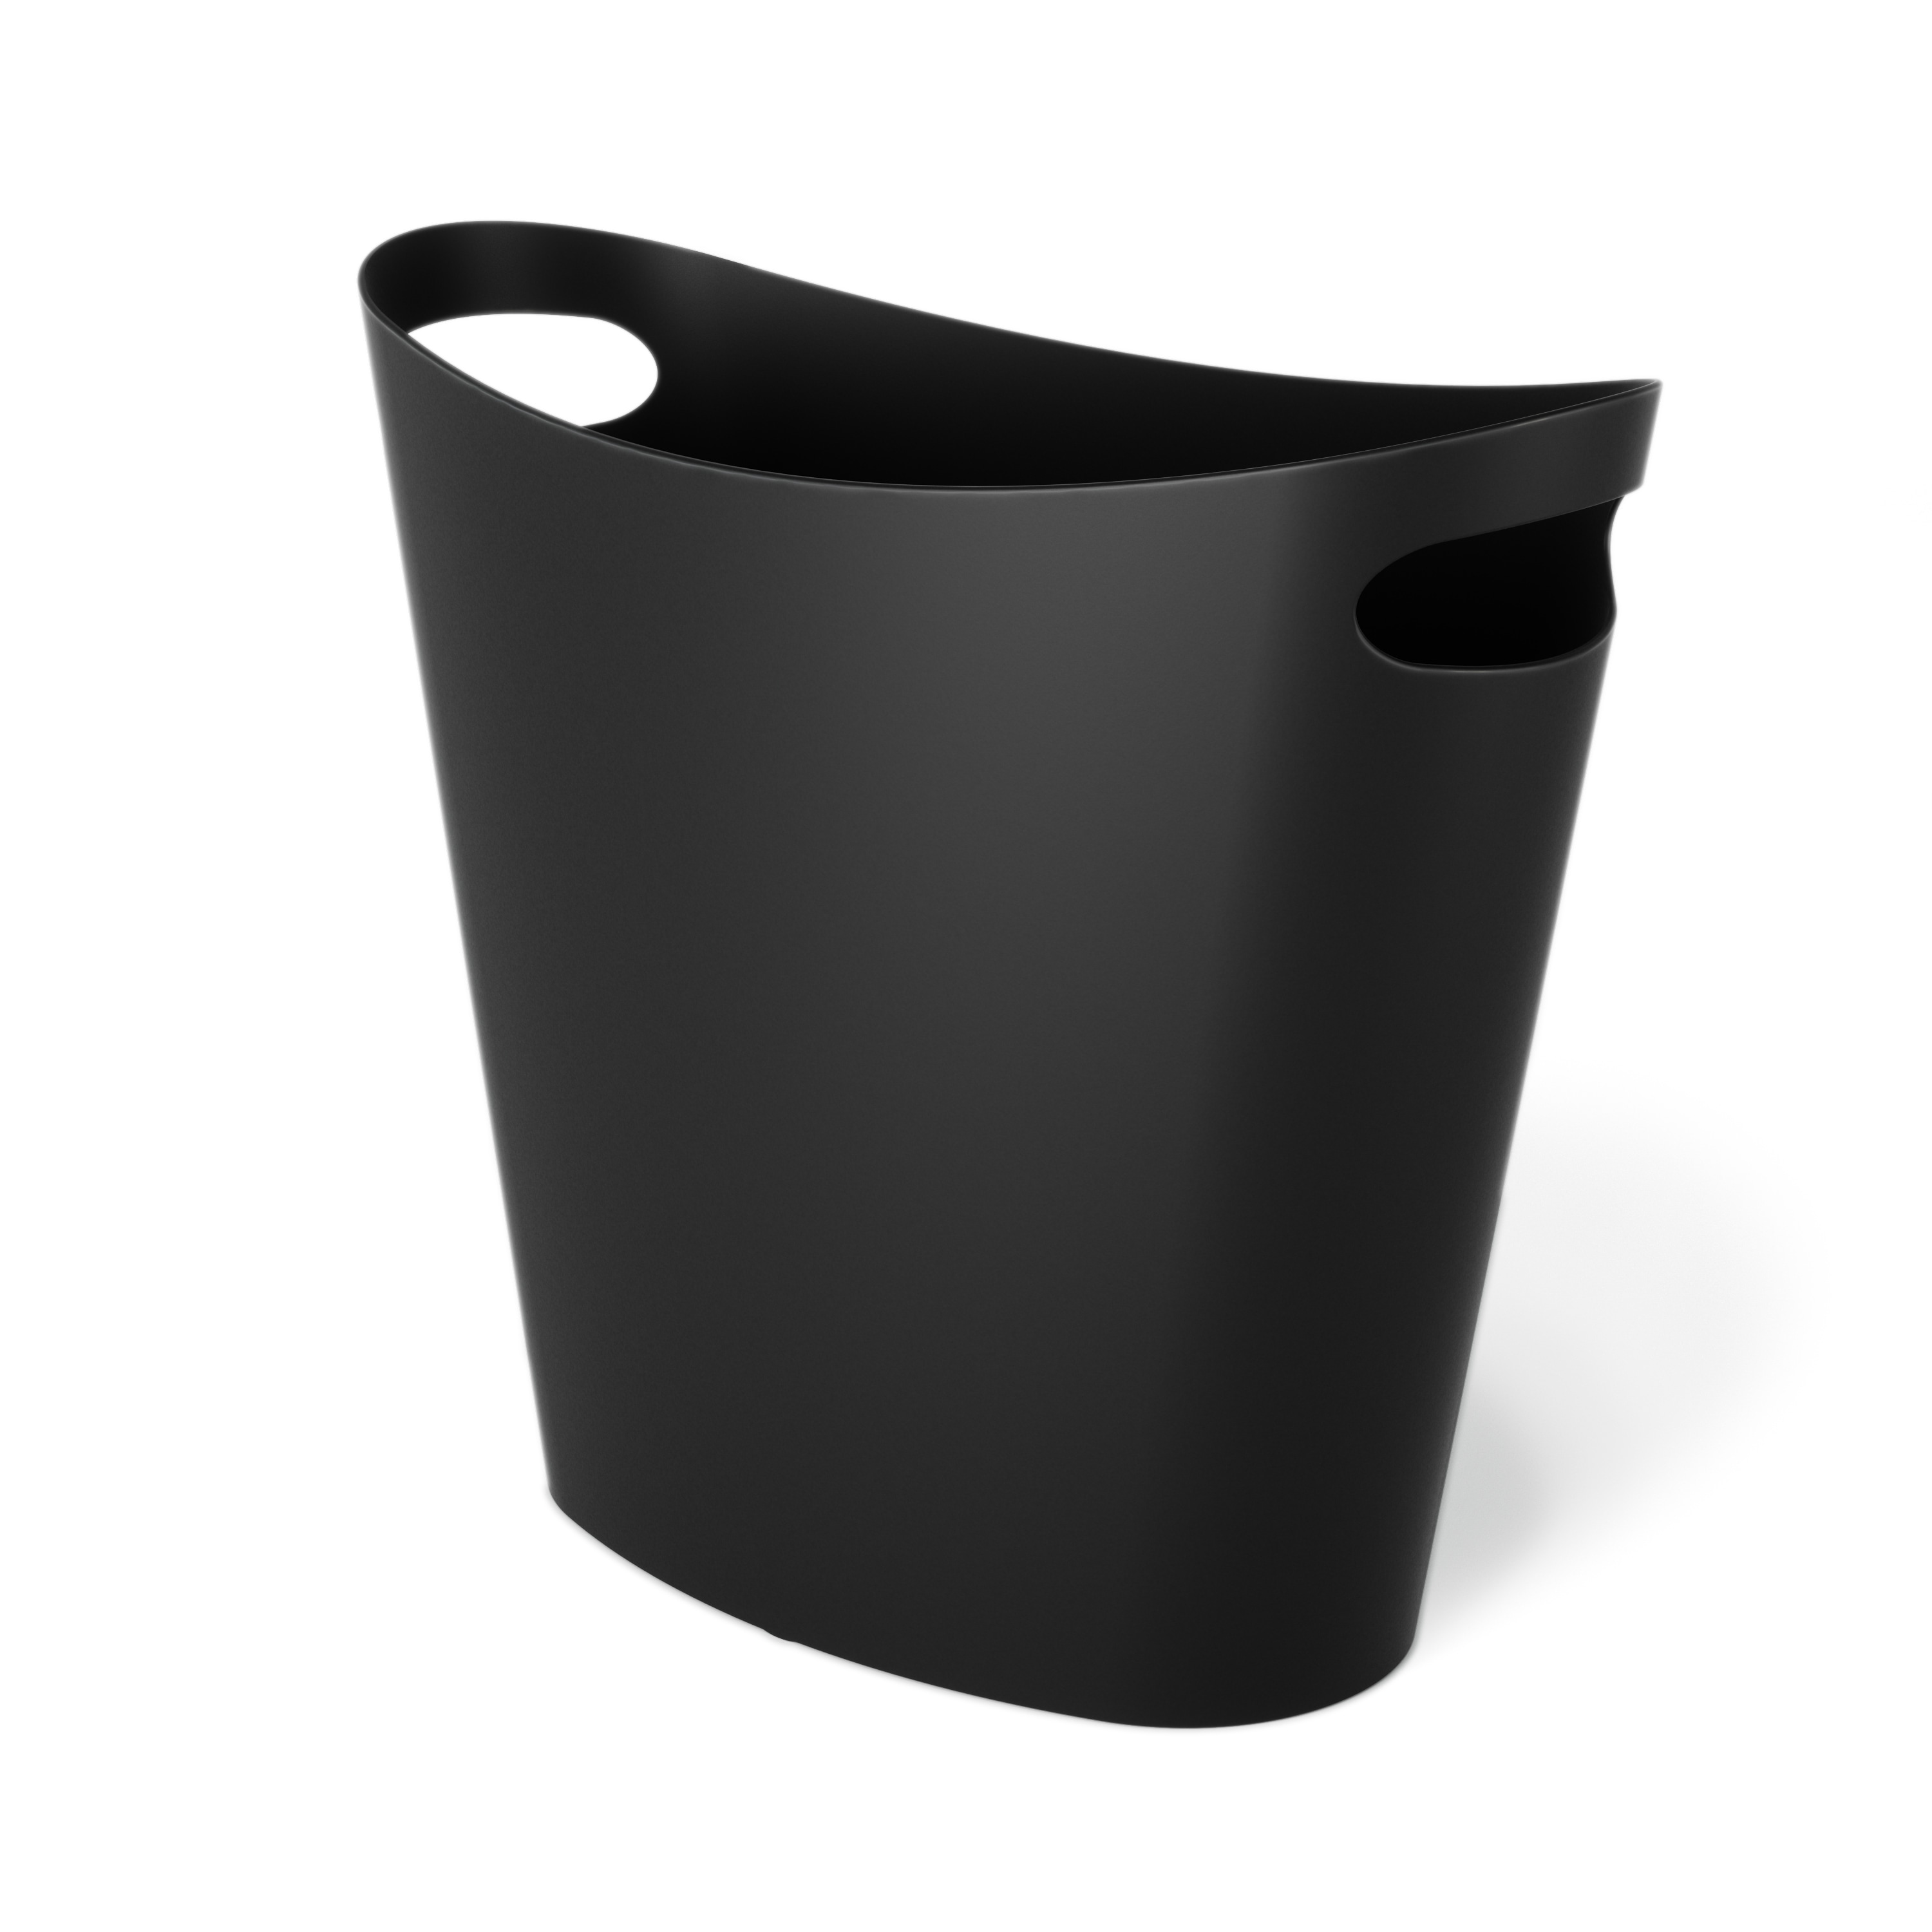 Baosia 12 Liter Black Rectangular Plastic Trash Can Wastebasket